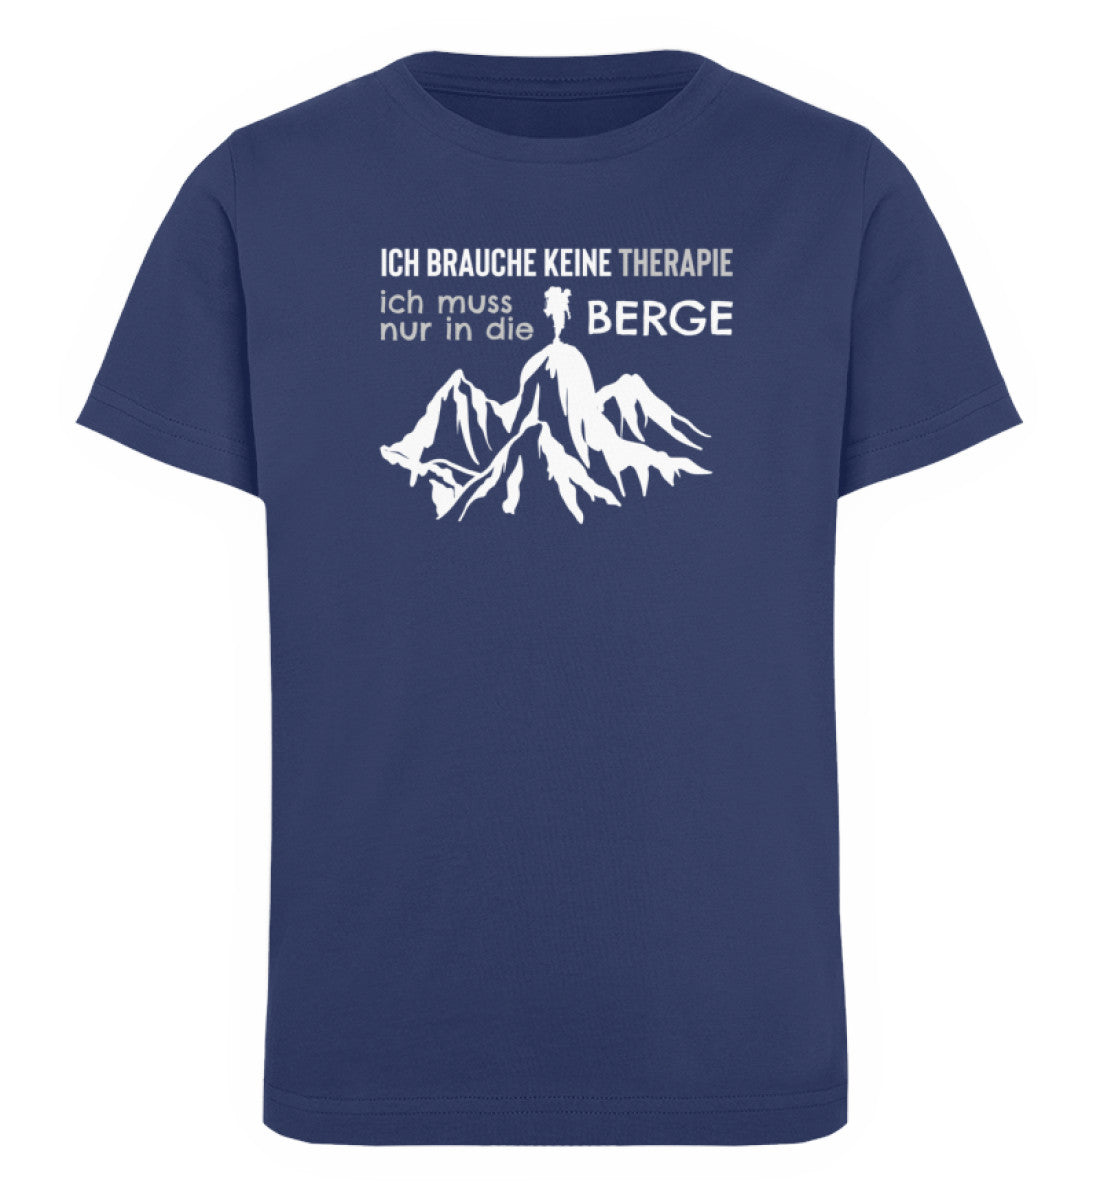 Therapie Ich muss nur in die Berge- Kinder Premium Organic T-Shirt Navyblau